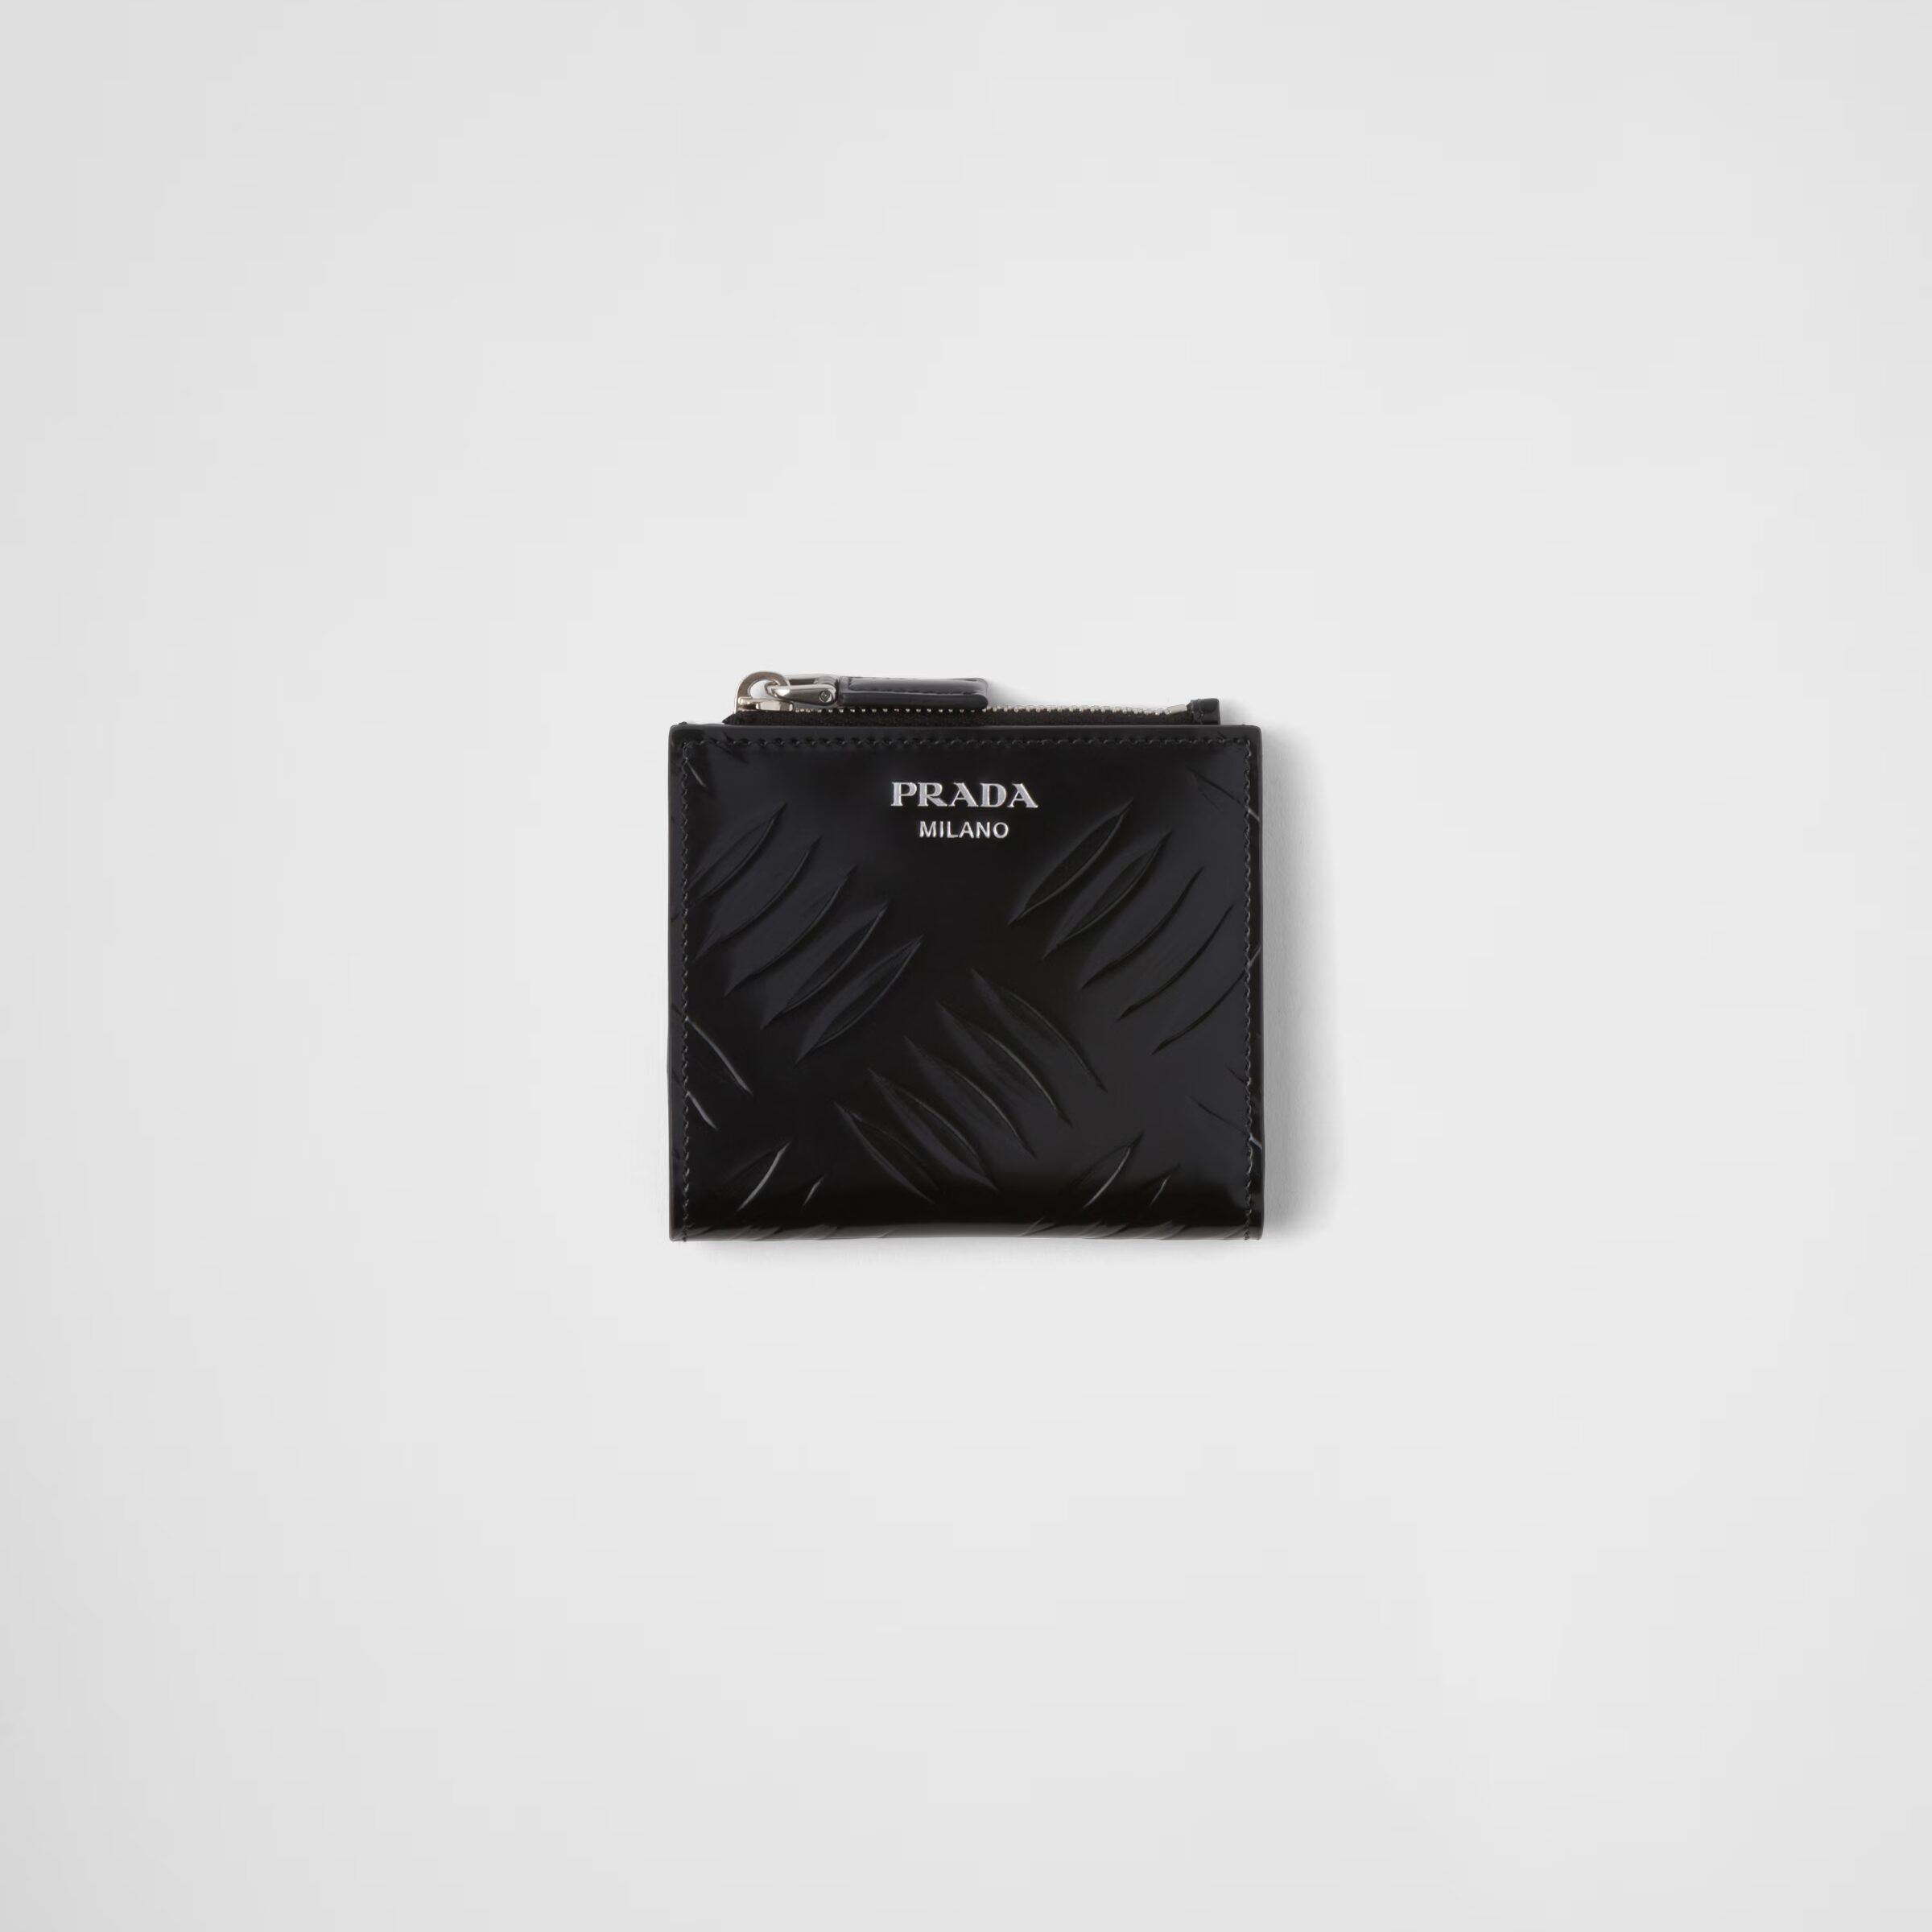 プラダ ブラッシュドレザー 財布  素材:レザー 色:ブラック